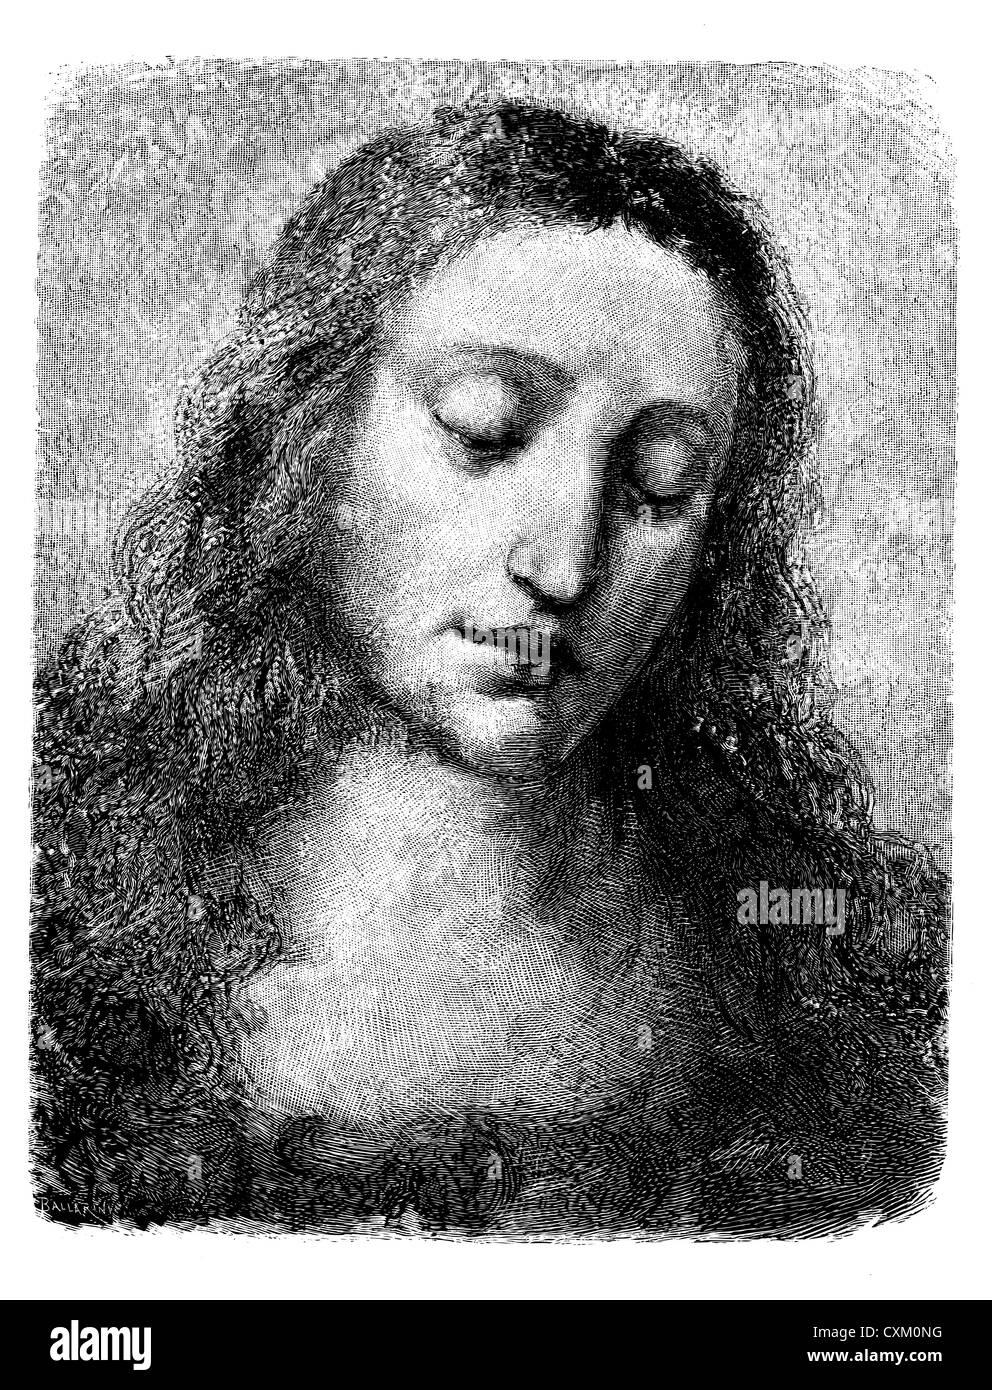 Lionardo il Cristo Gesù vintage illustrazioni incise, linea di incisione, creato nel 1884, dopo l'immagine di Leonardo da Vinci Foto Stock